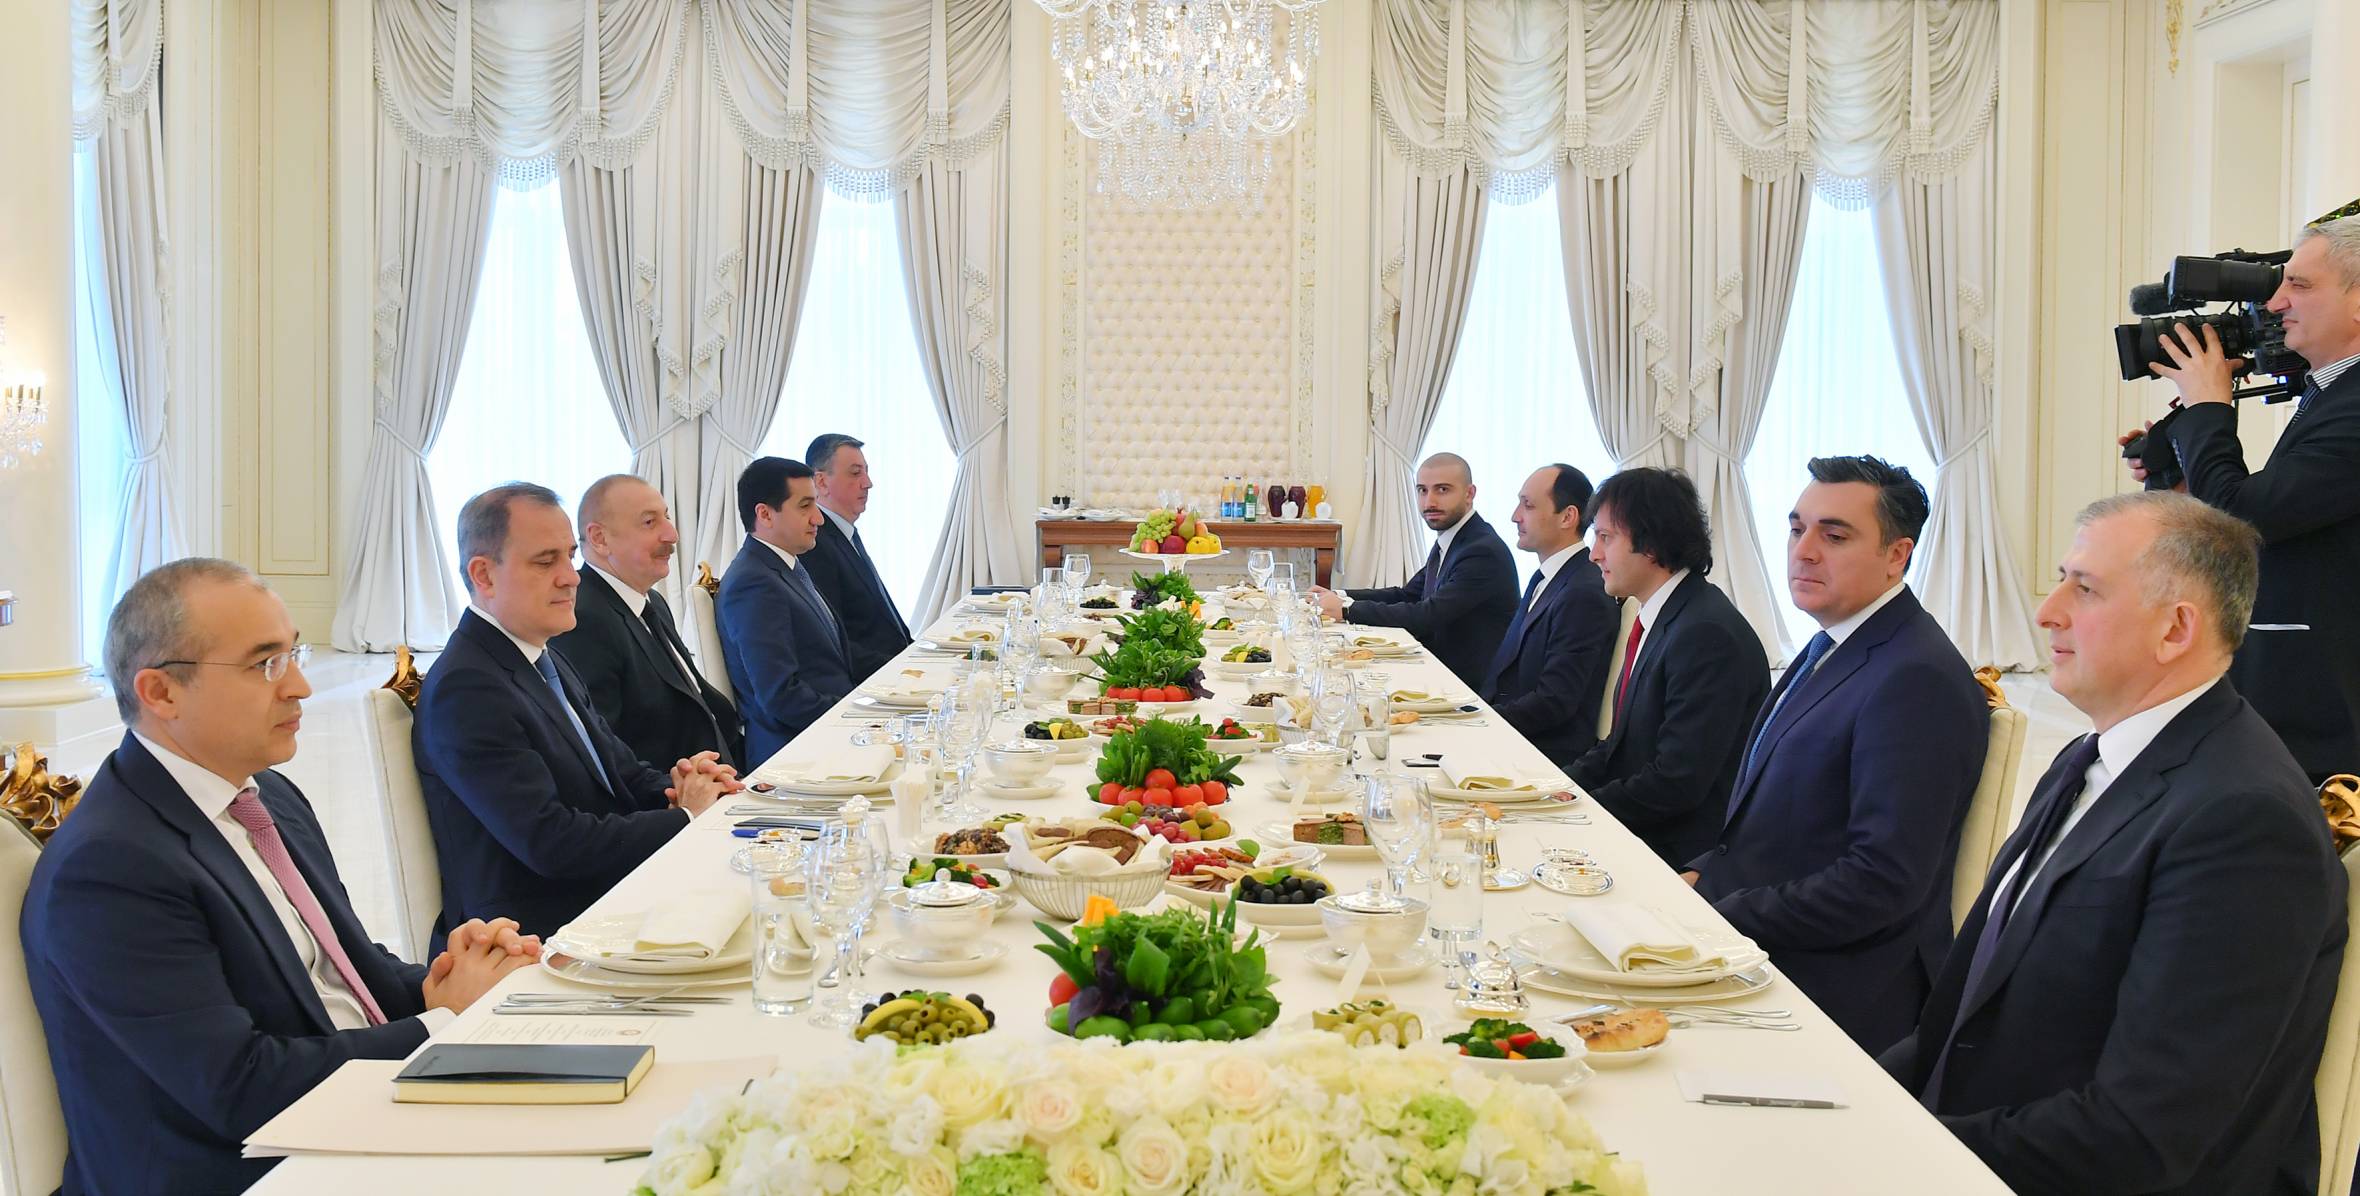 Состоялась встреча Президента Ильхама Алиева с премьер-министром Грузии Ираклием Кобахидзе в расширенном составе